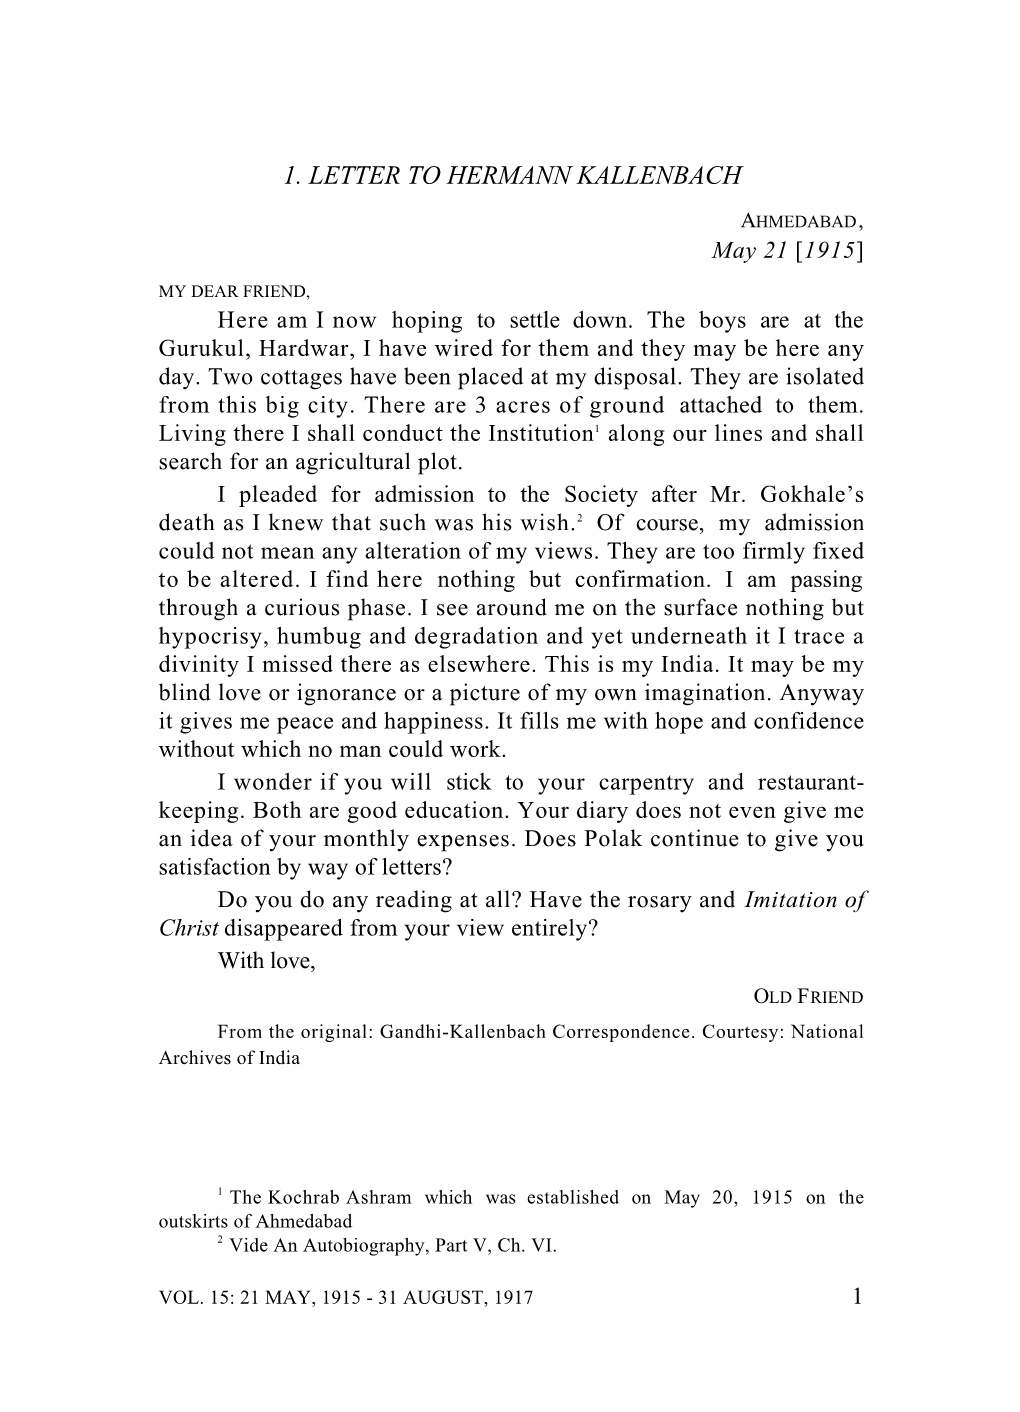 1. Letter to Hermann Kallenbach